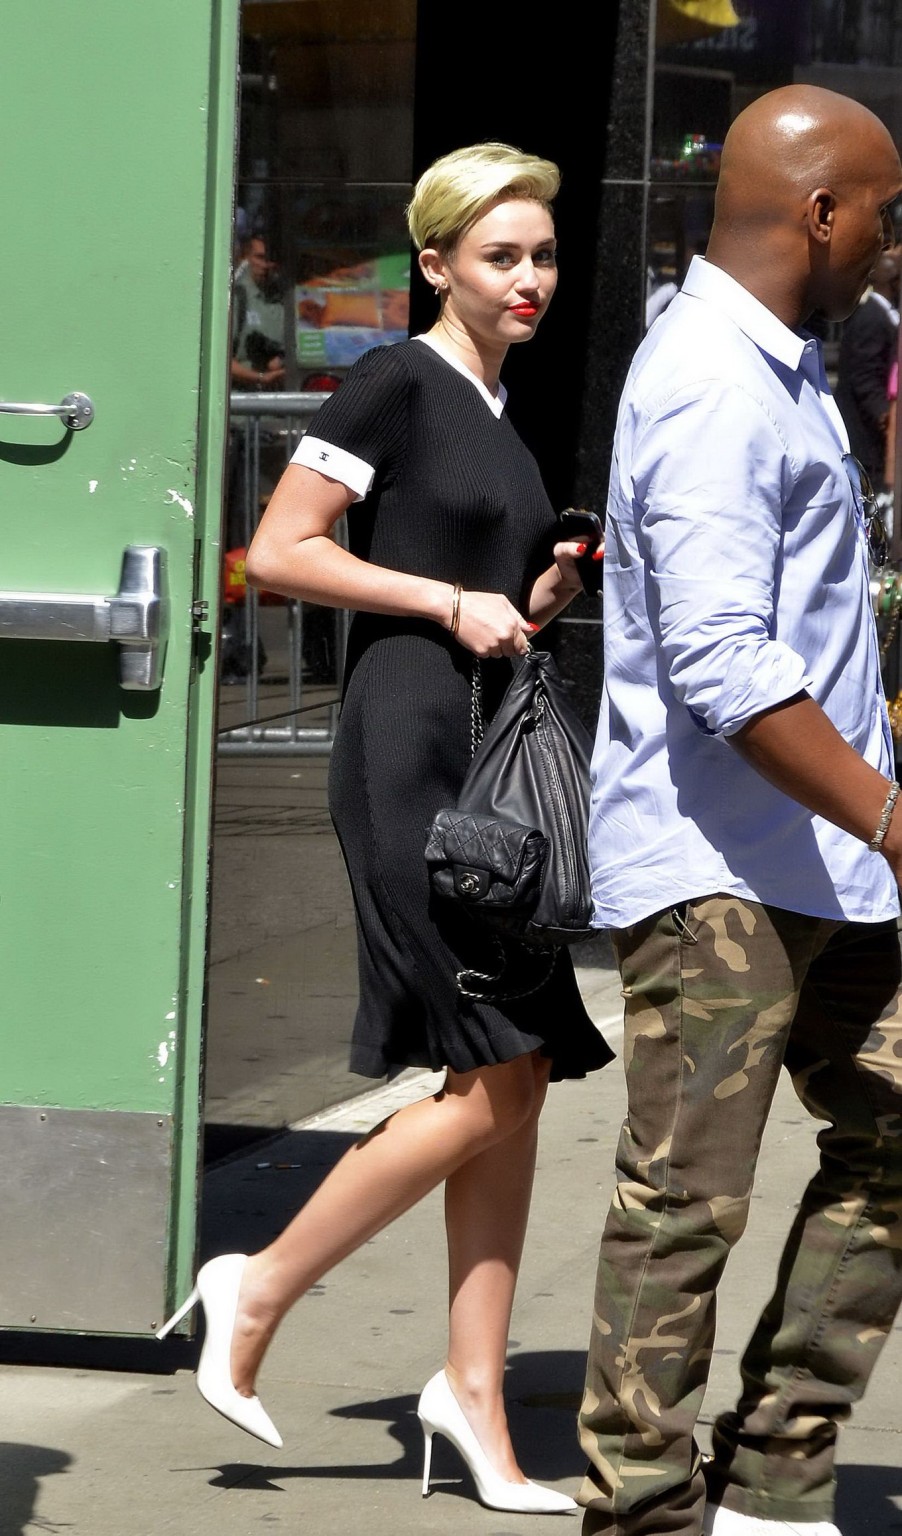 Miley cyrus mostrando sus tetas braless en vestido negro transparente en nyc
 #75224541